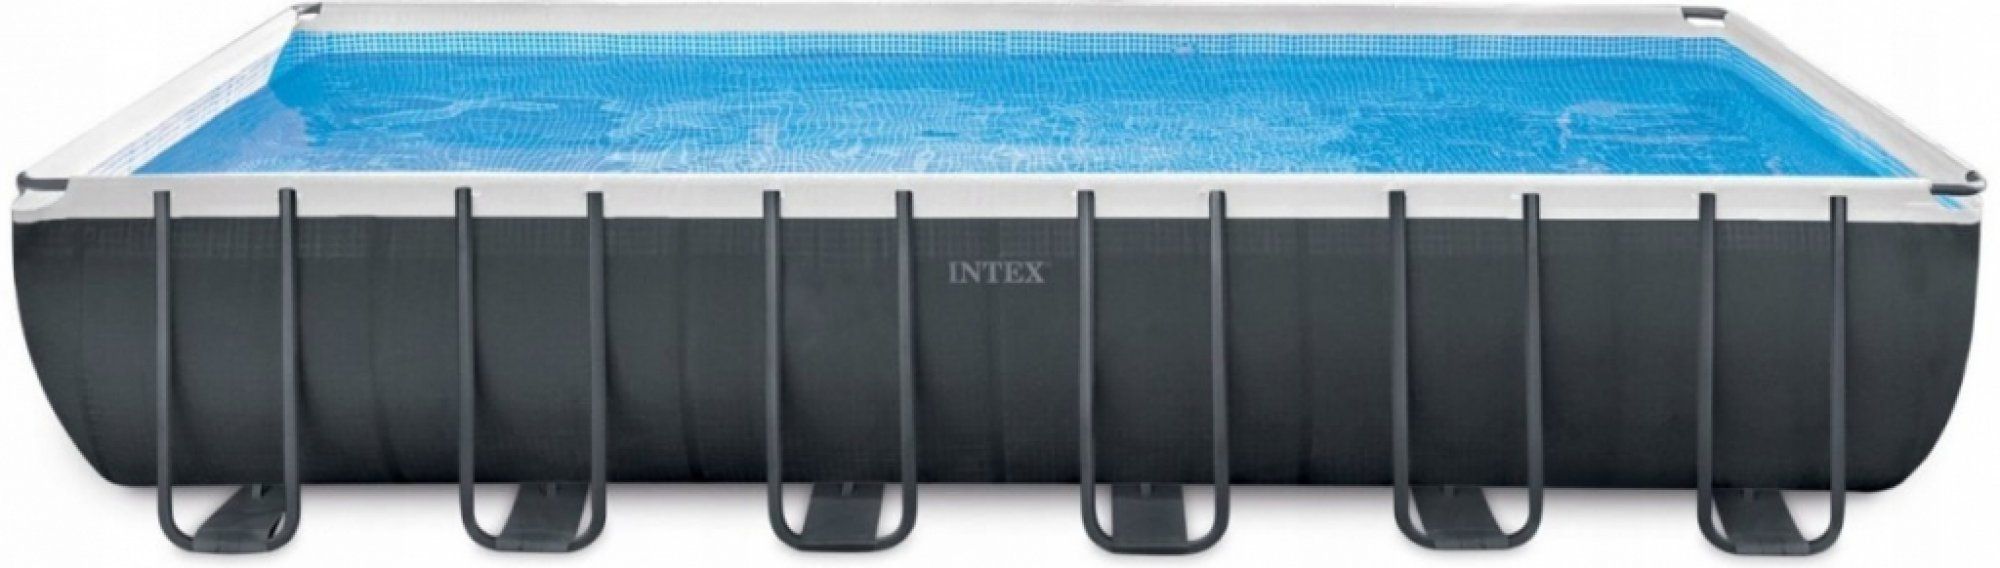 INTEX bazén Rectangular Ultra Frame XTR set, 732x366x132 cm s pískovou filtrací, solinátorem a příslušenstvím - moderninakup.cz